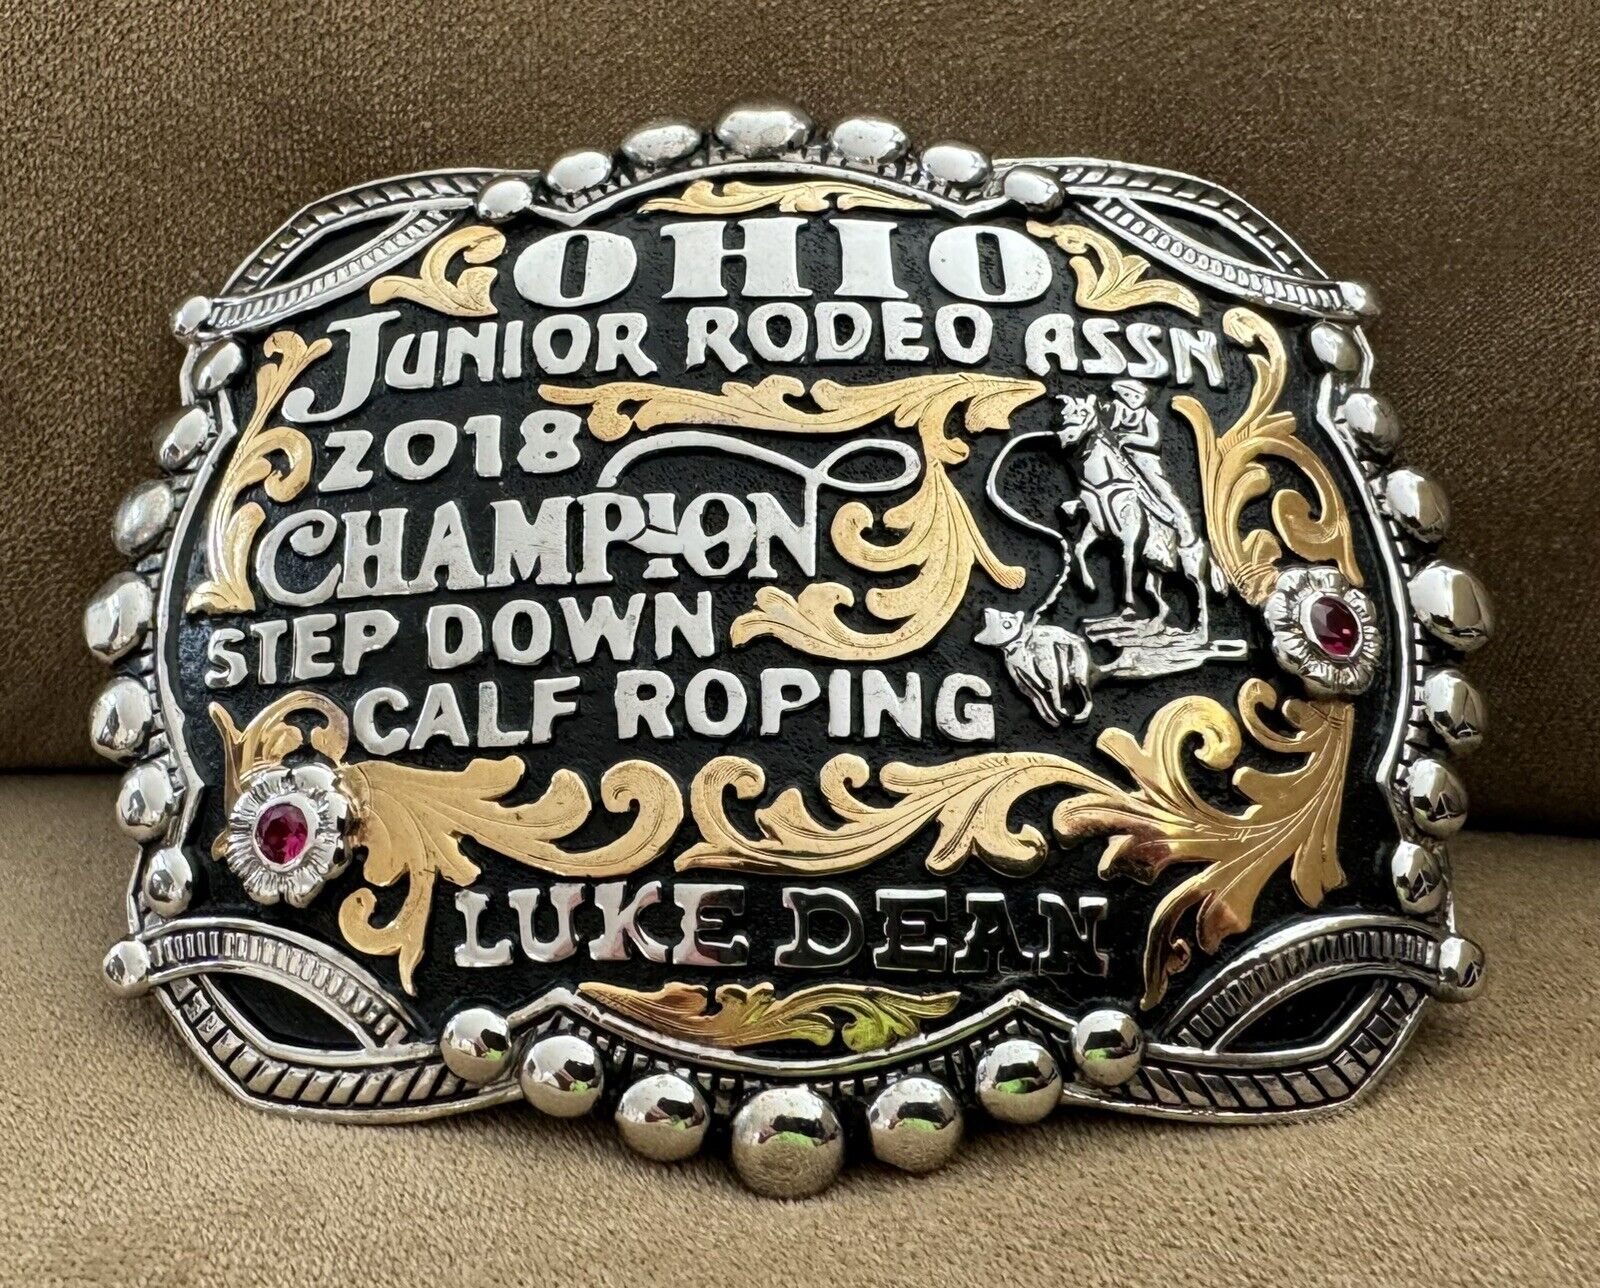 VTG Huge NOS Benchmark 2018 OJRA OHIO Rodeo Champion Roping Trophy Belt Buckle